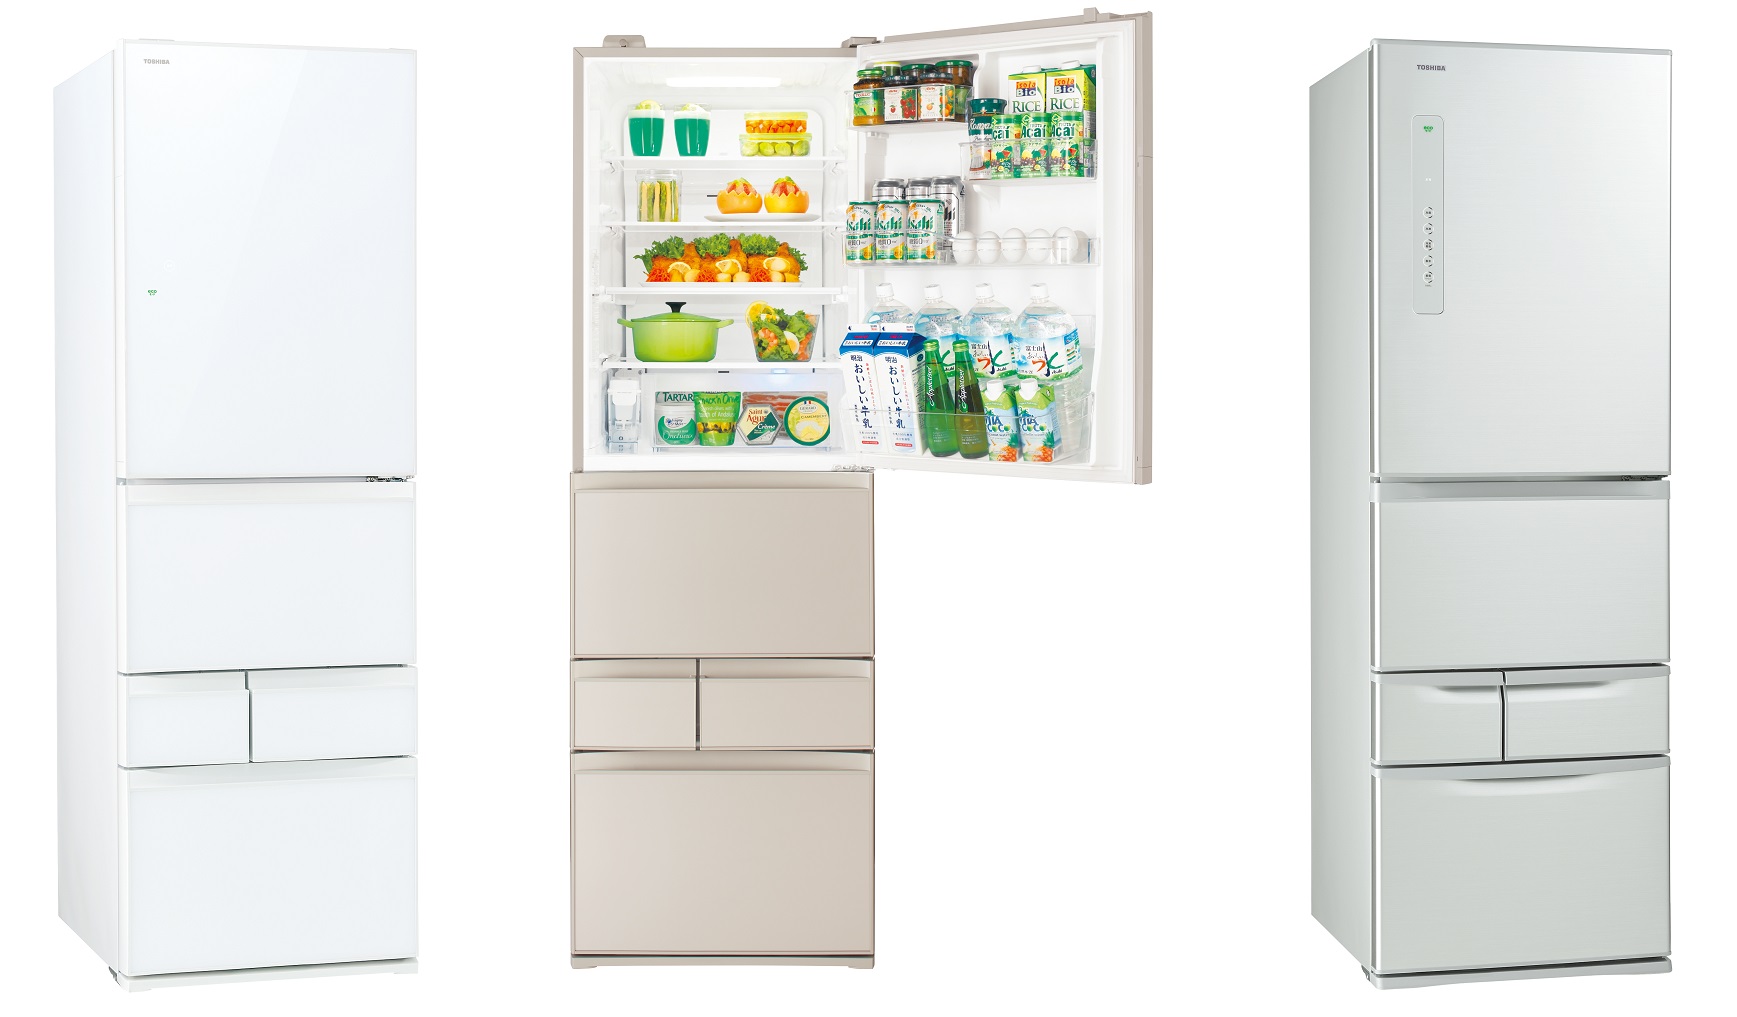 設置しやすい幅60cmのスリムな5ドア冷凍冷蔵庫「VEGETA」シリーズ2機種 